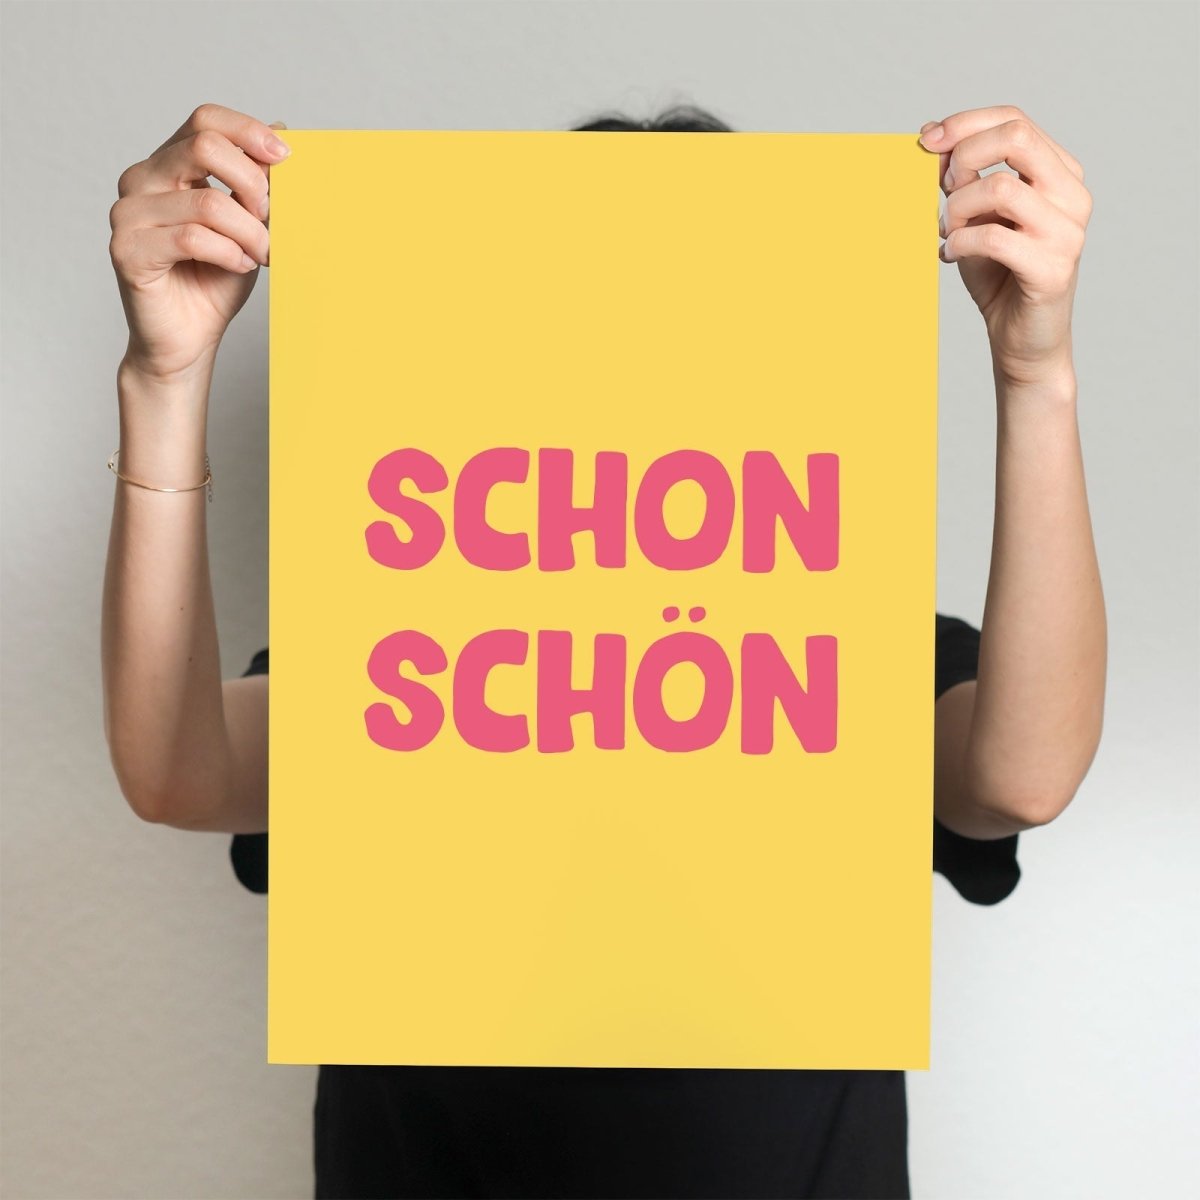 Schon schön Poster • modernes Typografieposter - vonSUSI